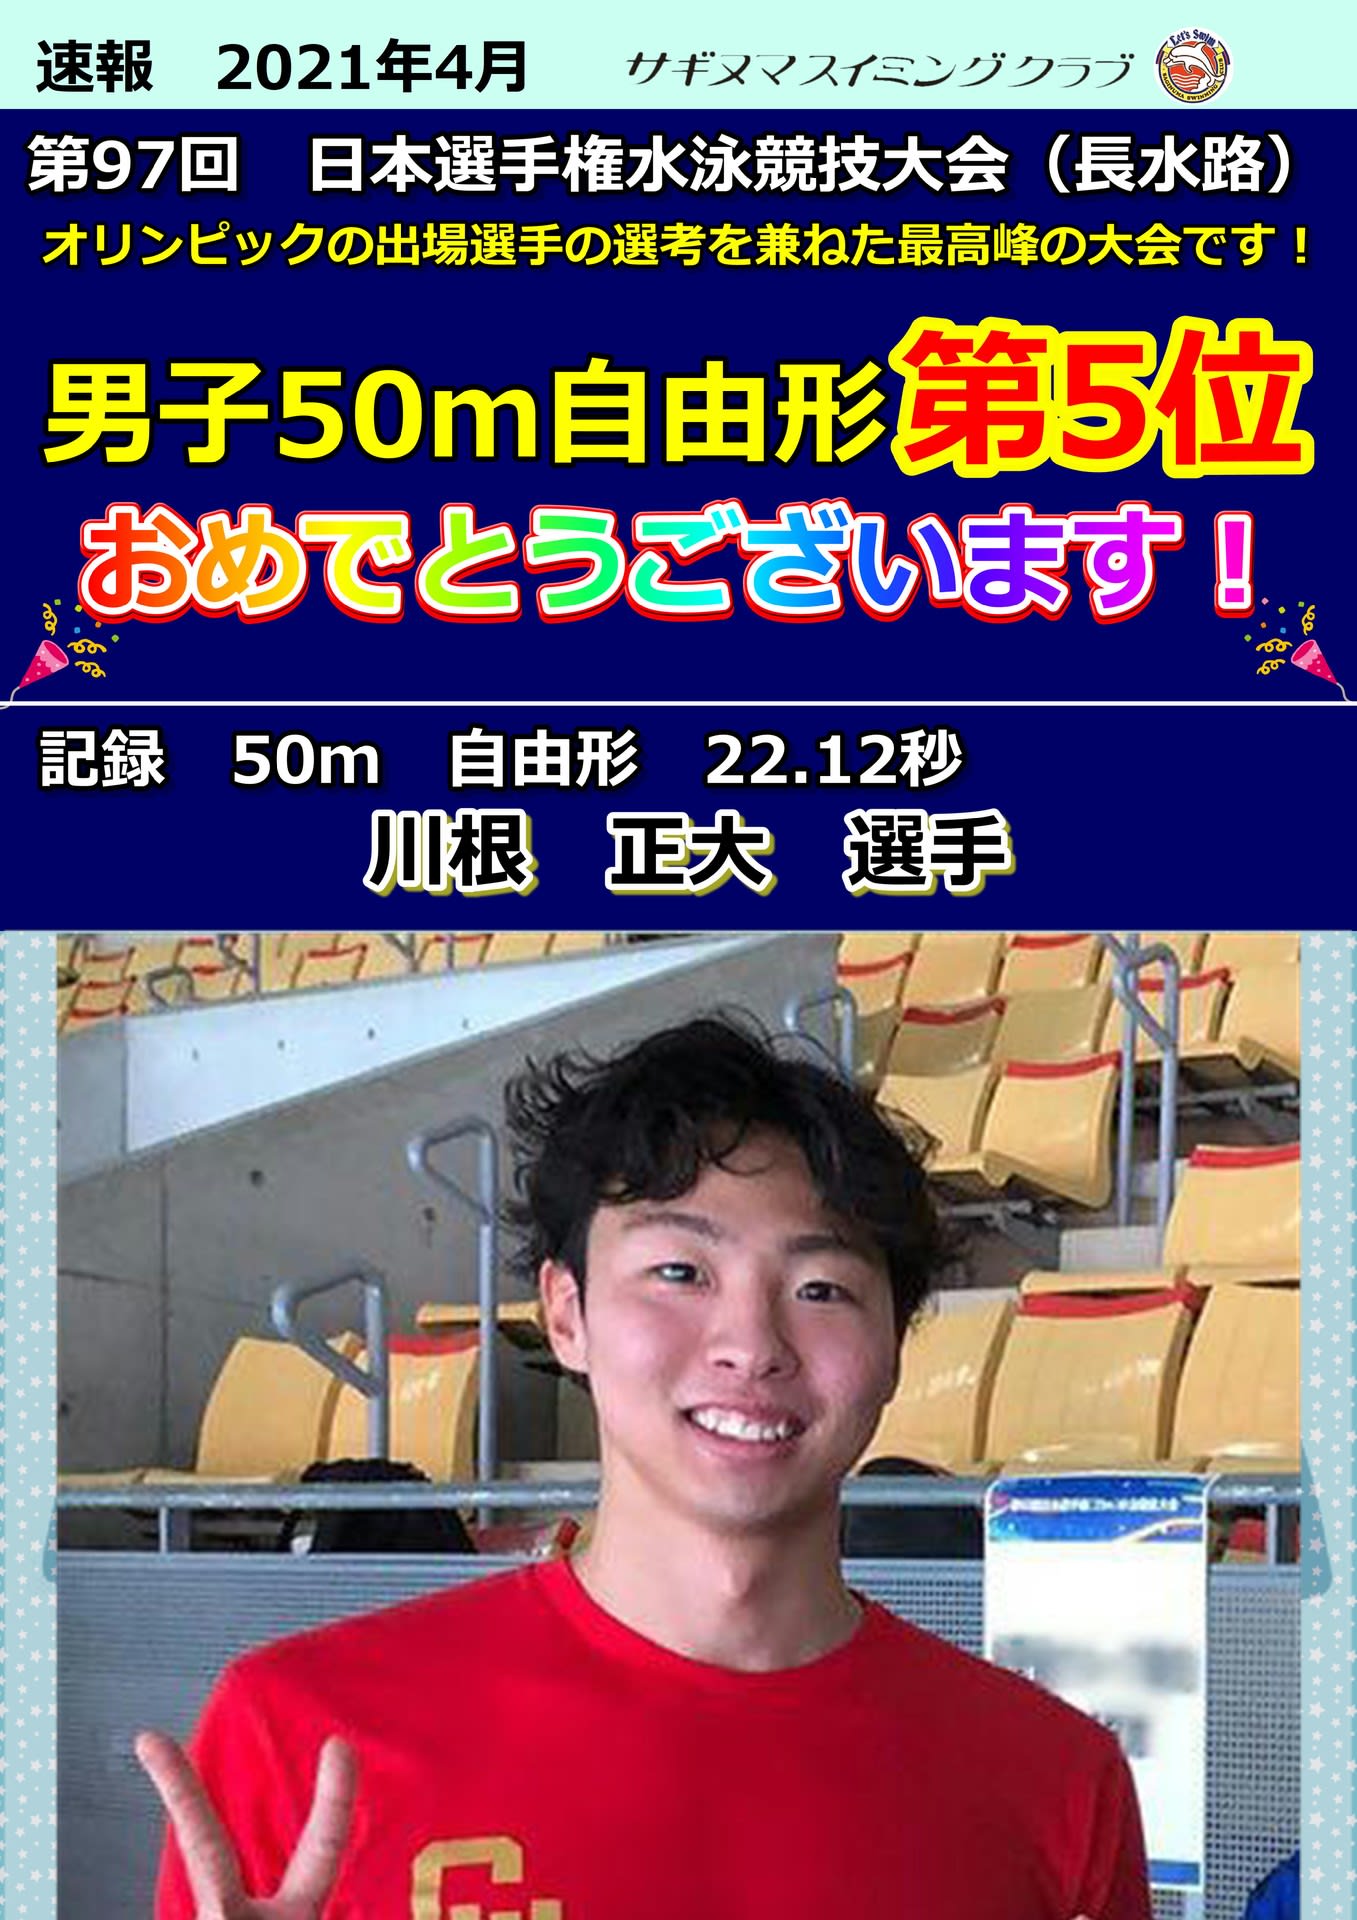 第97回 日本選手権水泳競技大会（長水路） 決勝結果』 - サギヌマスイミング お知らせ掲示板